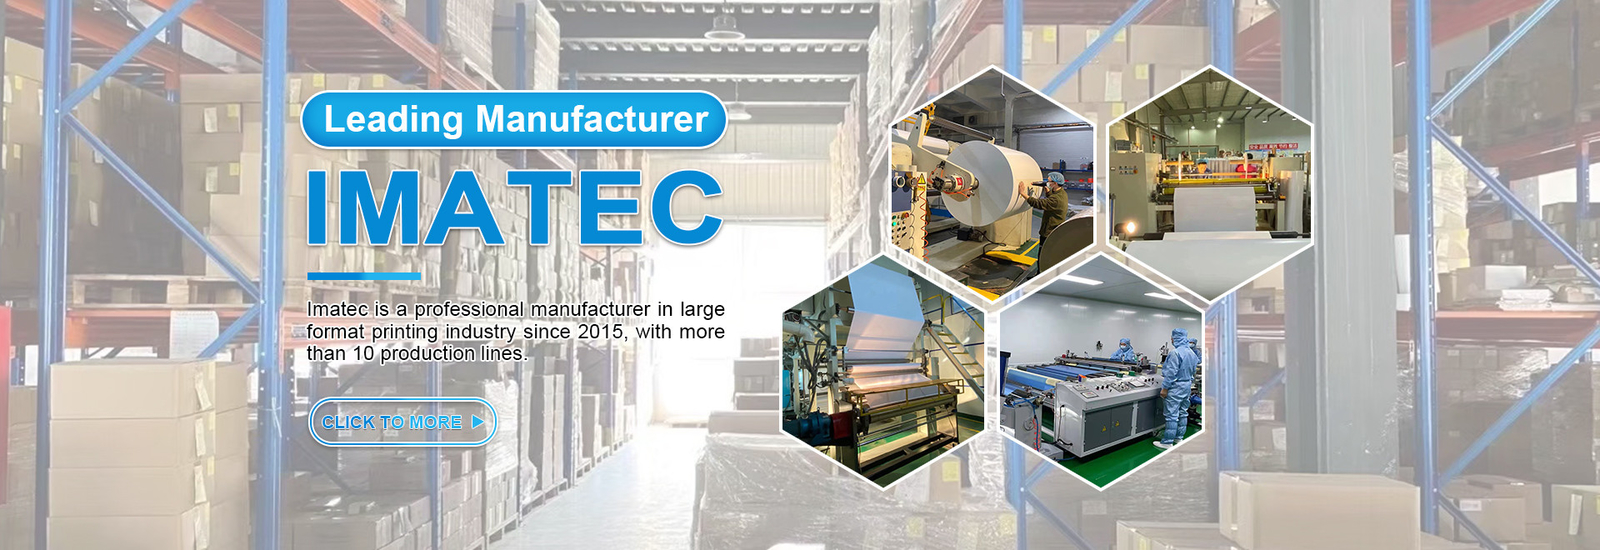 Imatec Imaging Co., Ltd. 업체 생산 라인